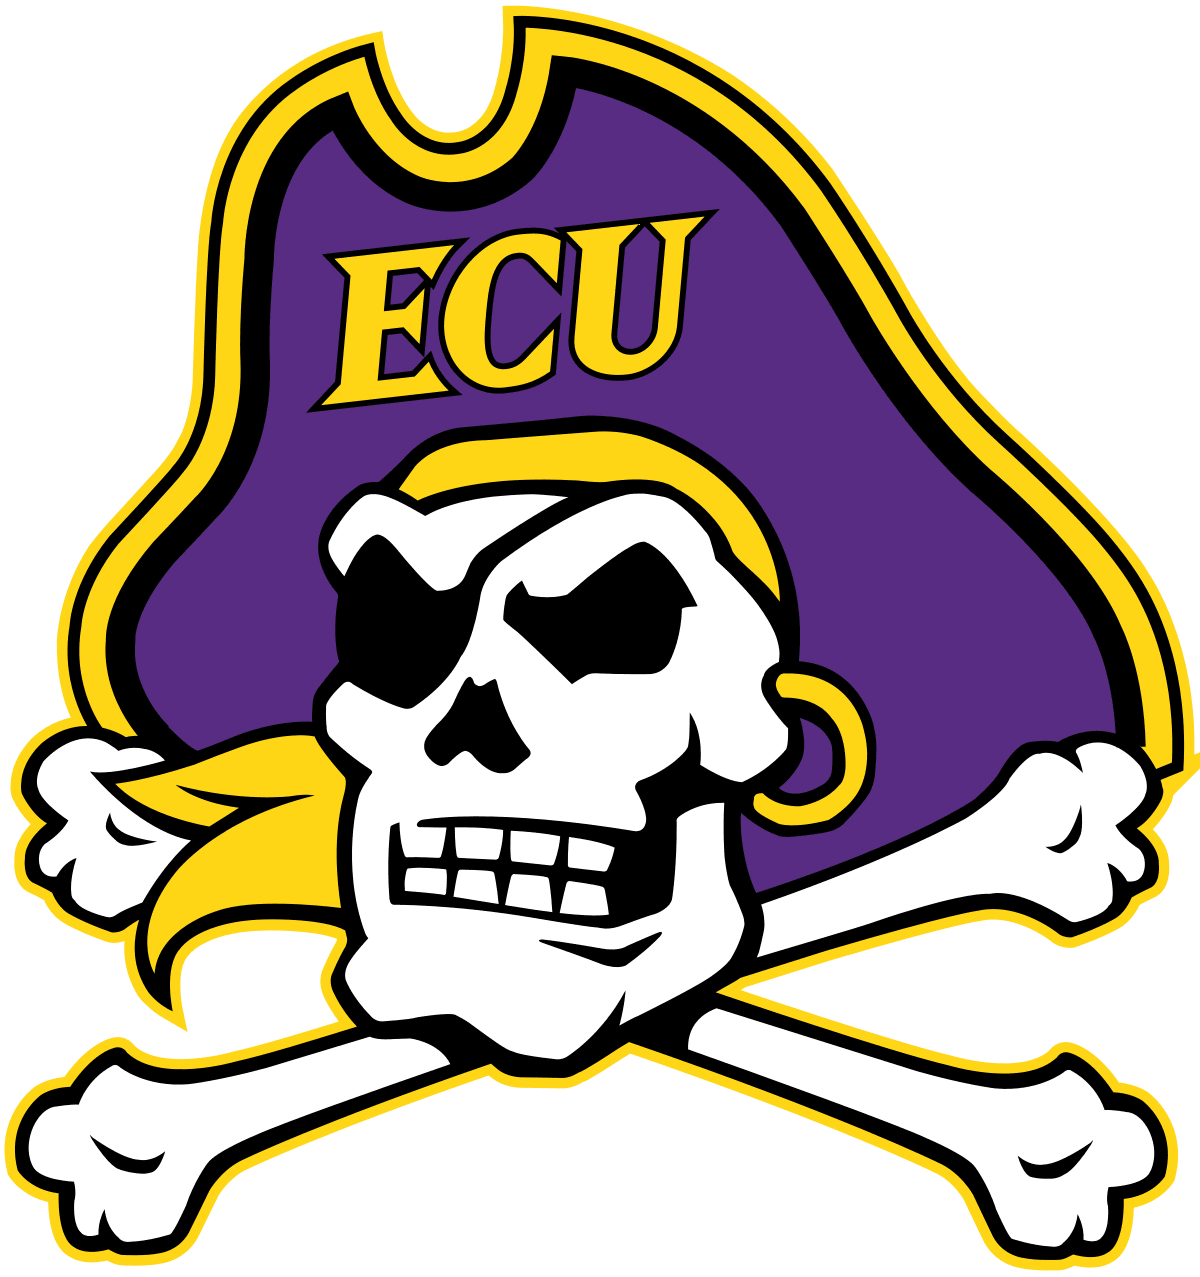 East Carolina University - Student Manager (2019-2021)